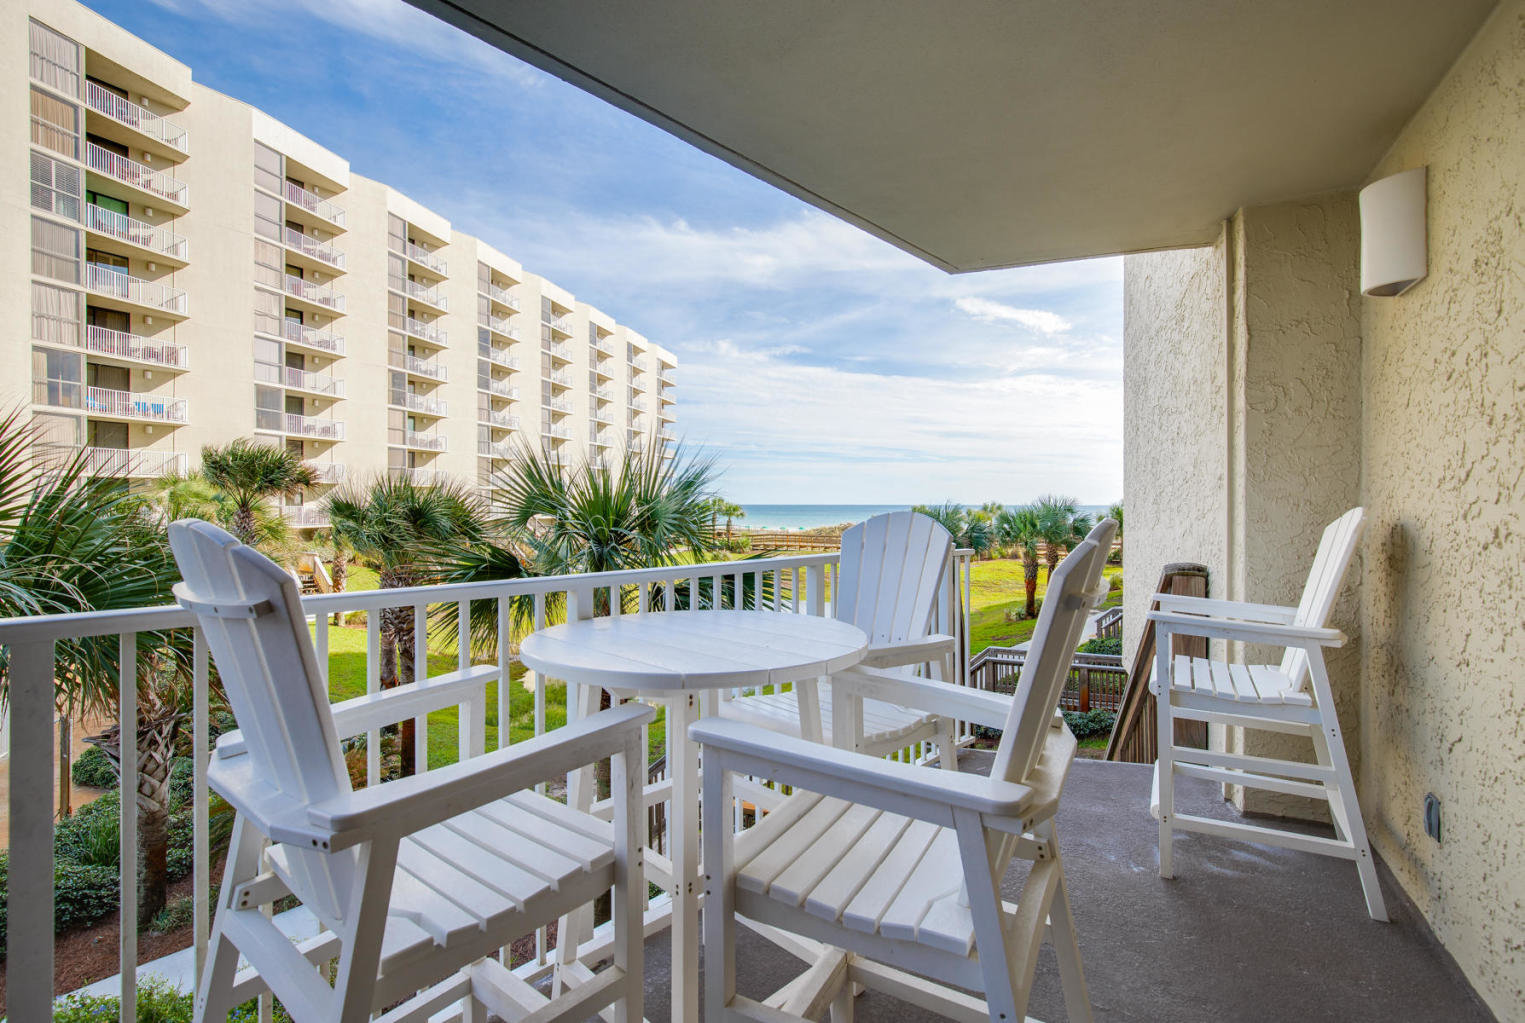 Gulf view from balcony in Mainsail condos, Miramar Beach, FL